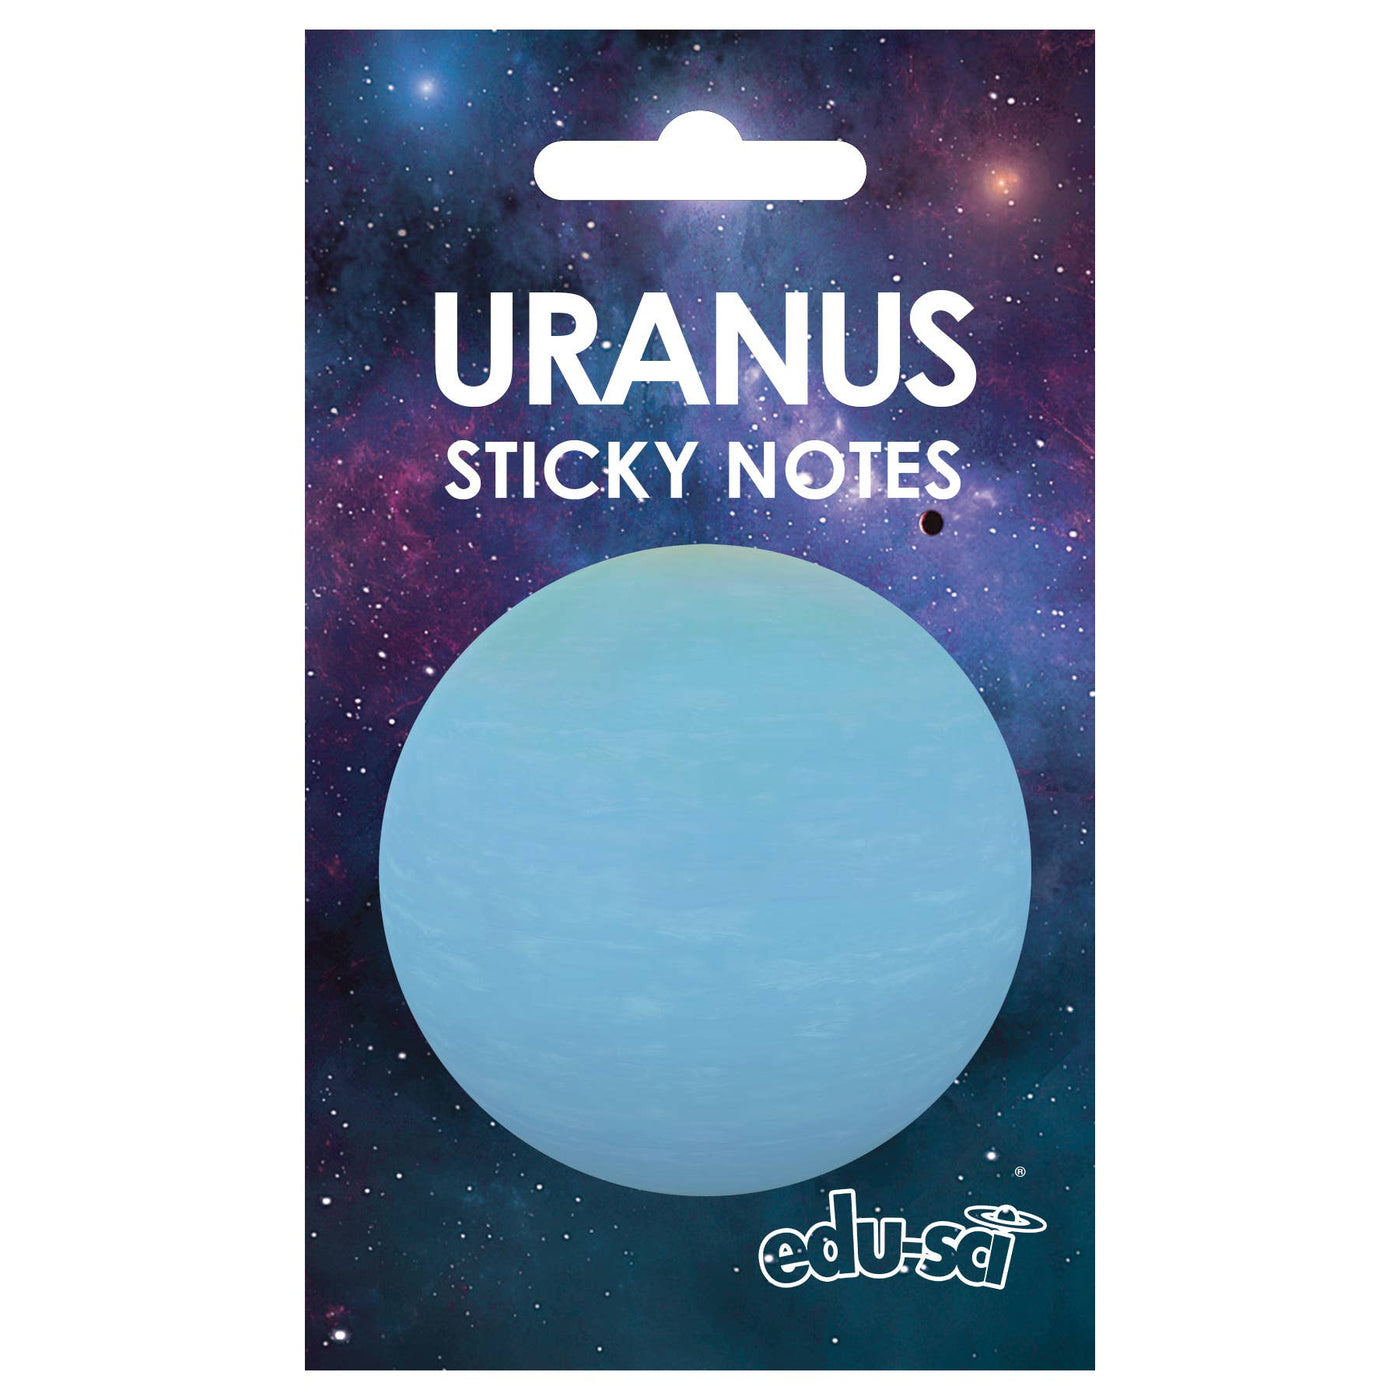 Uranus Sticky Notes